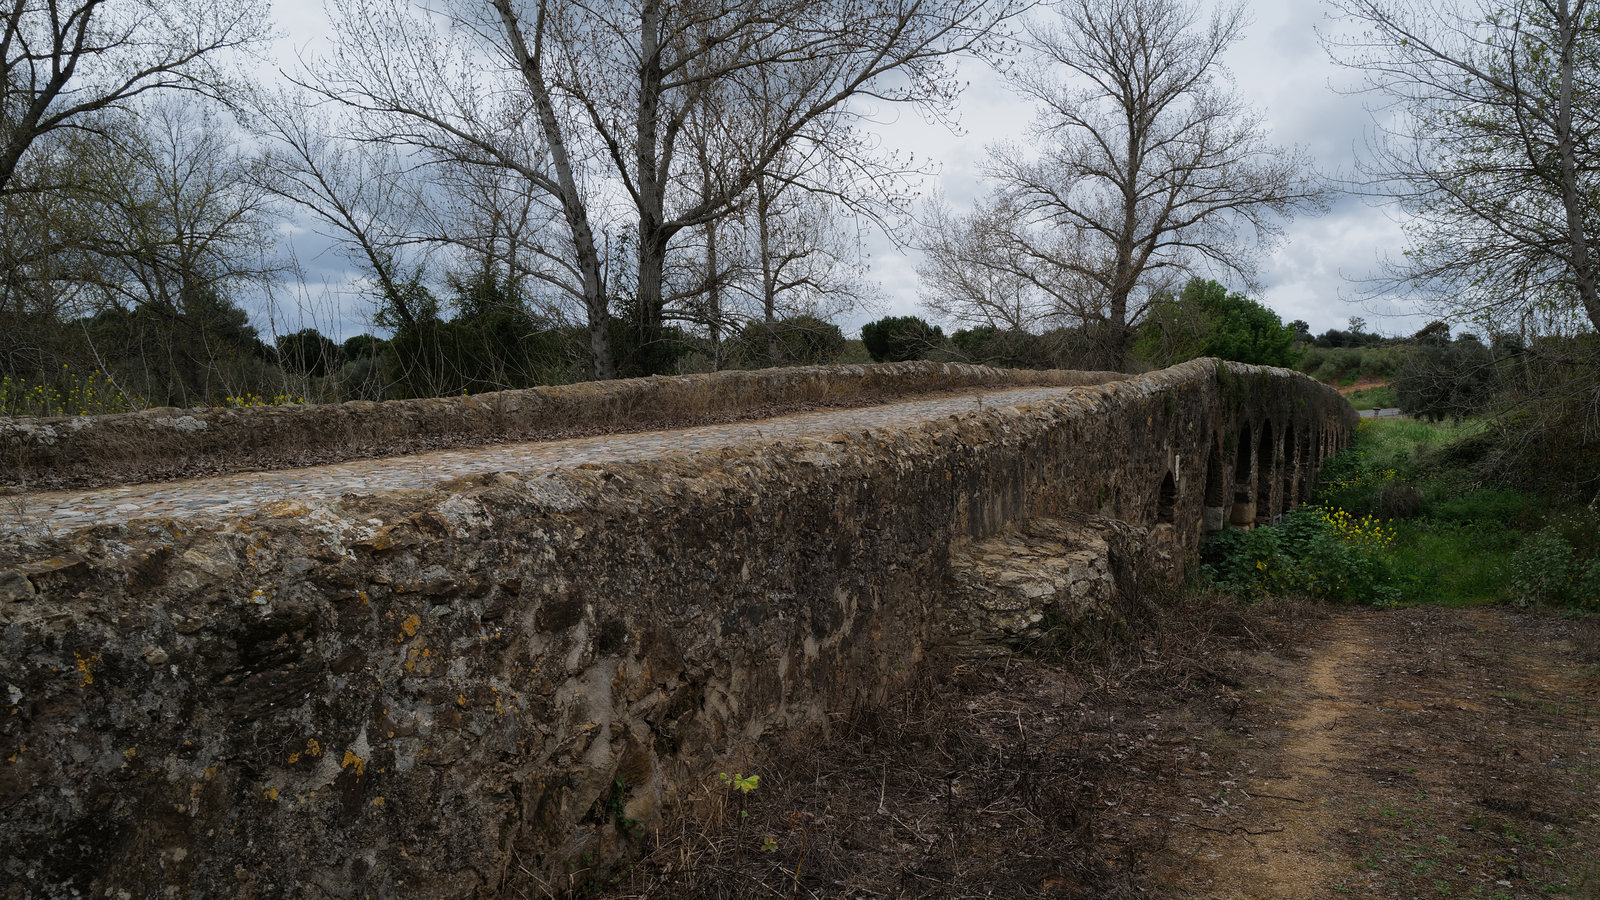 Ponte romana de Vila Ruiva